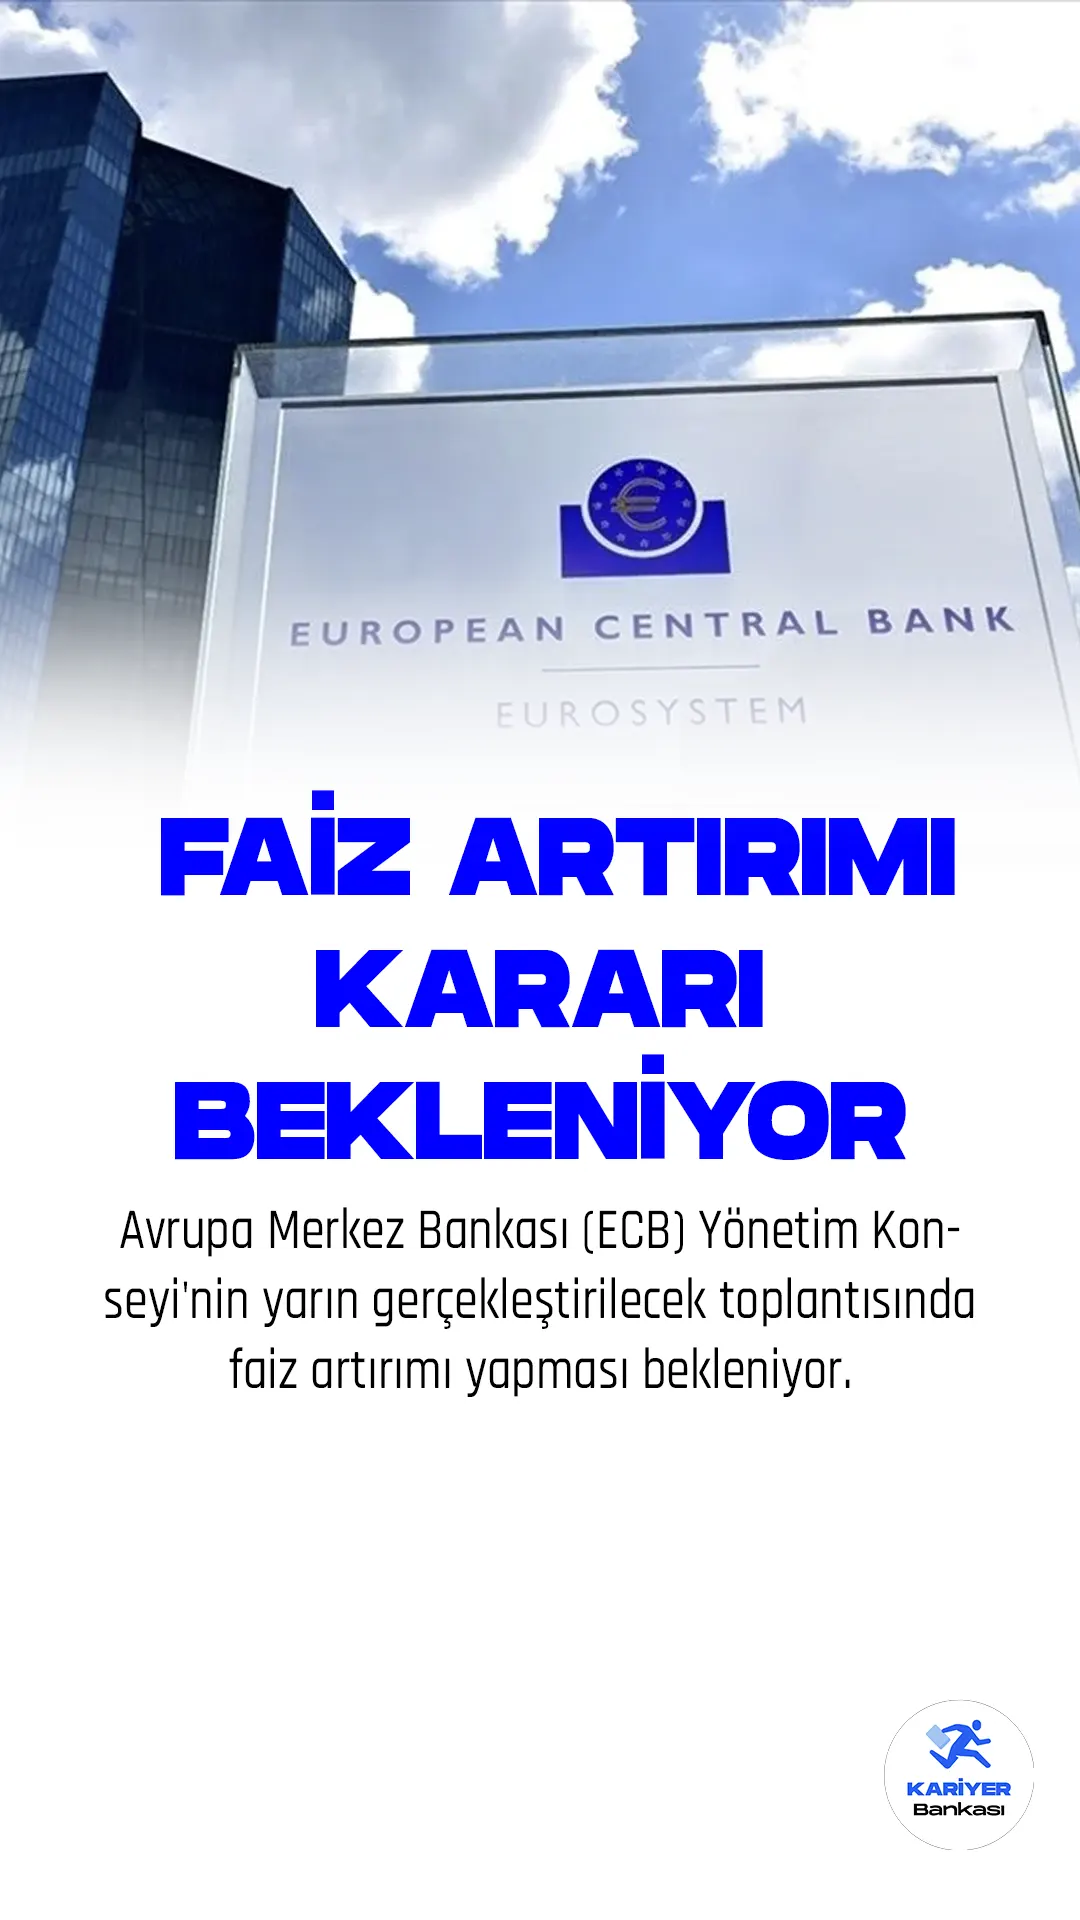 Avrupa Merkez Bankası (ECB) Yönetim Konseyi'nin yarın gerçekleştirilecek toplantısında faiz artırımı yapması bekleniyor.